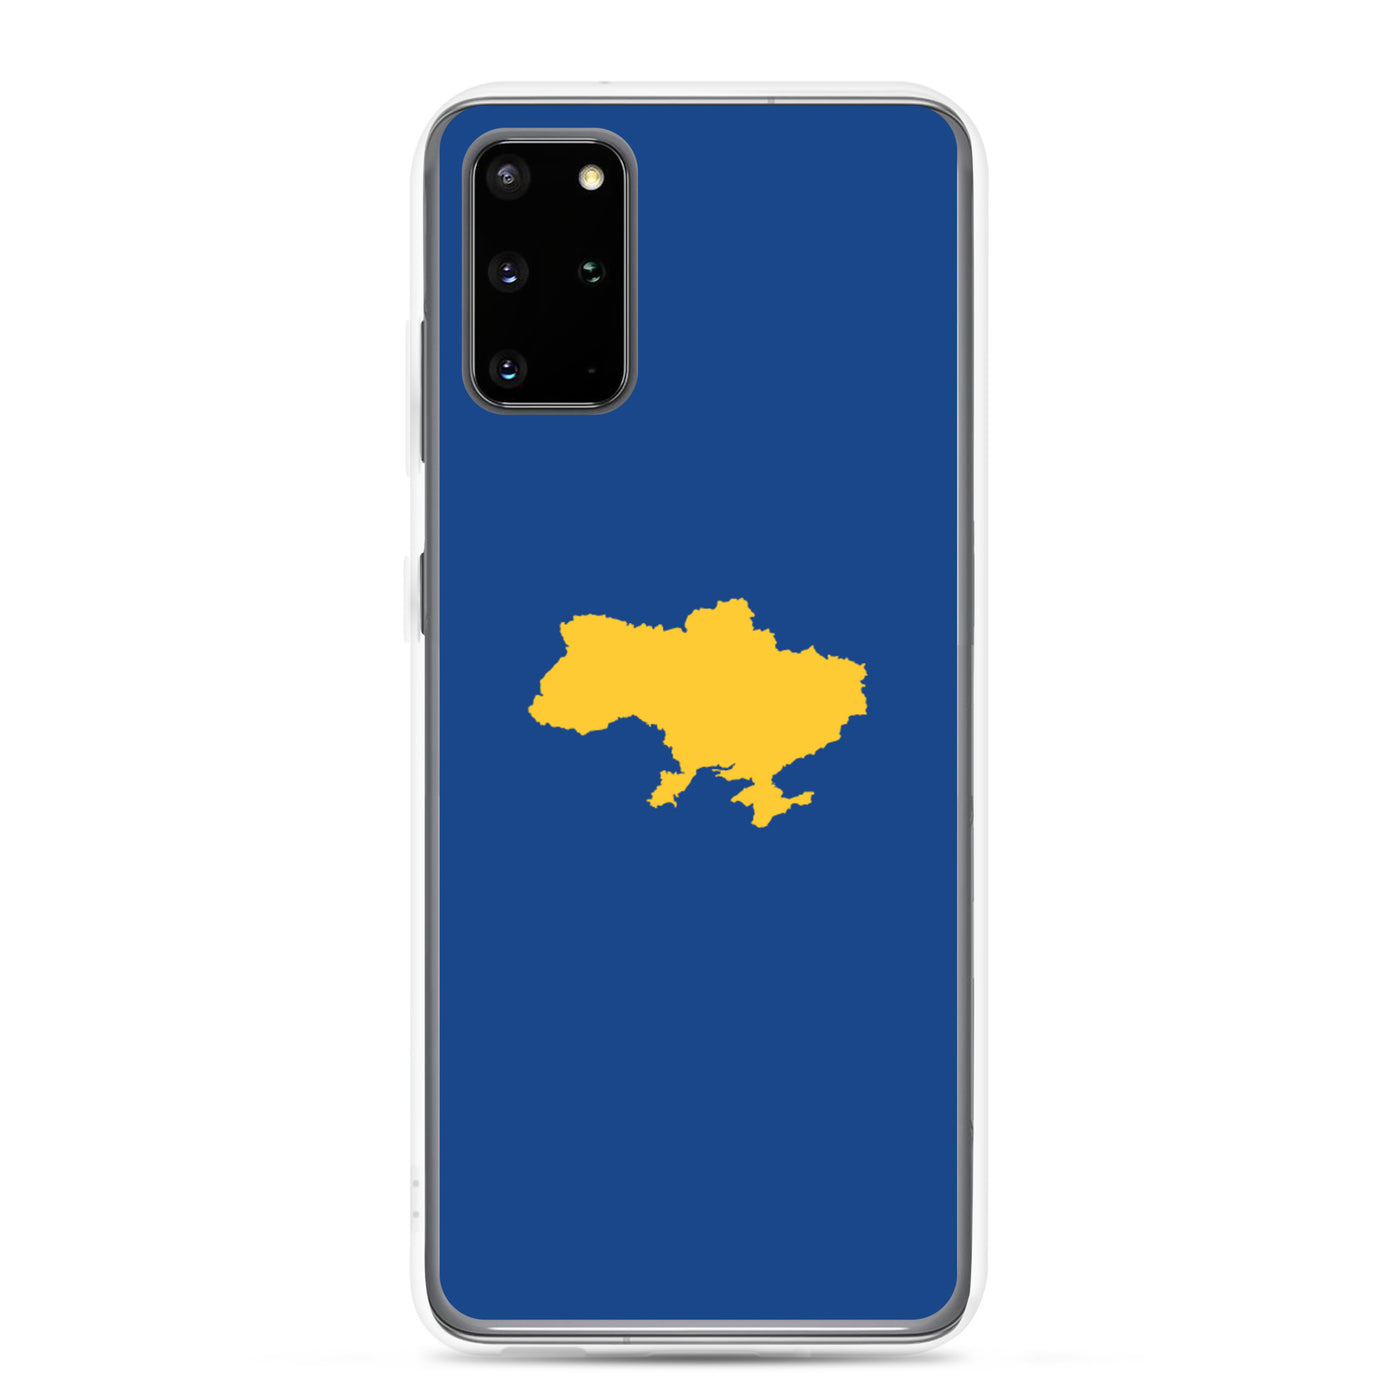 Karte der Ukraine Samsung Hüllen